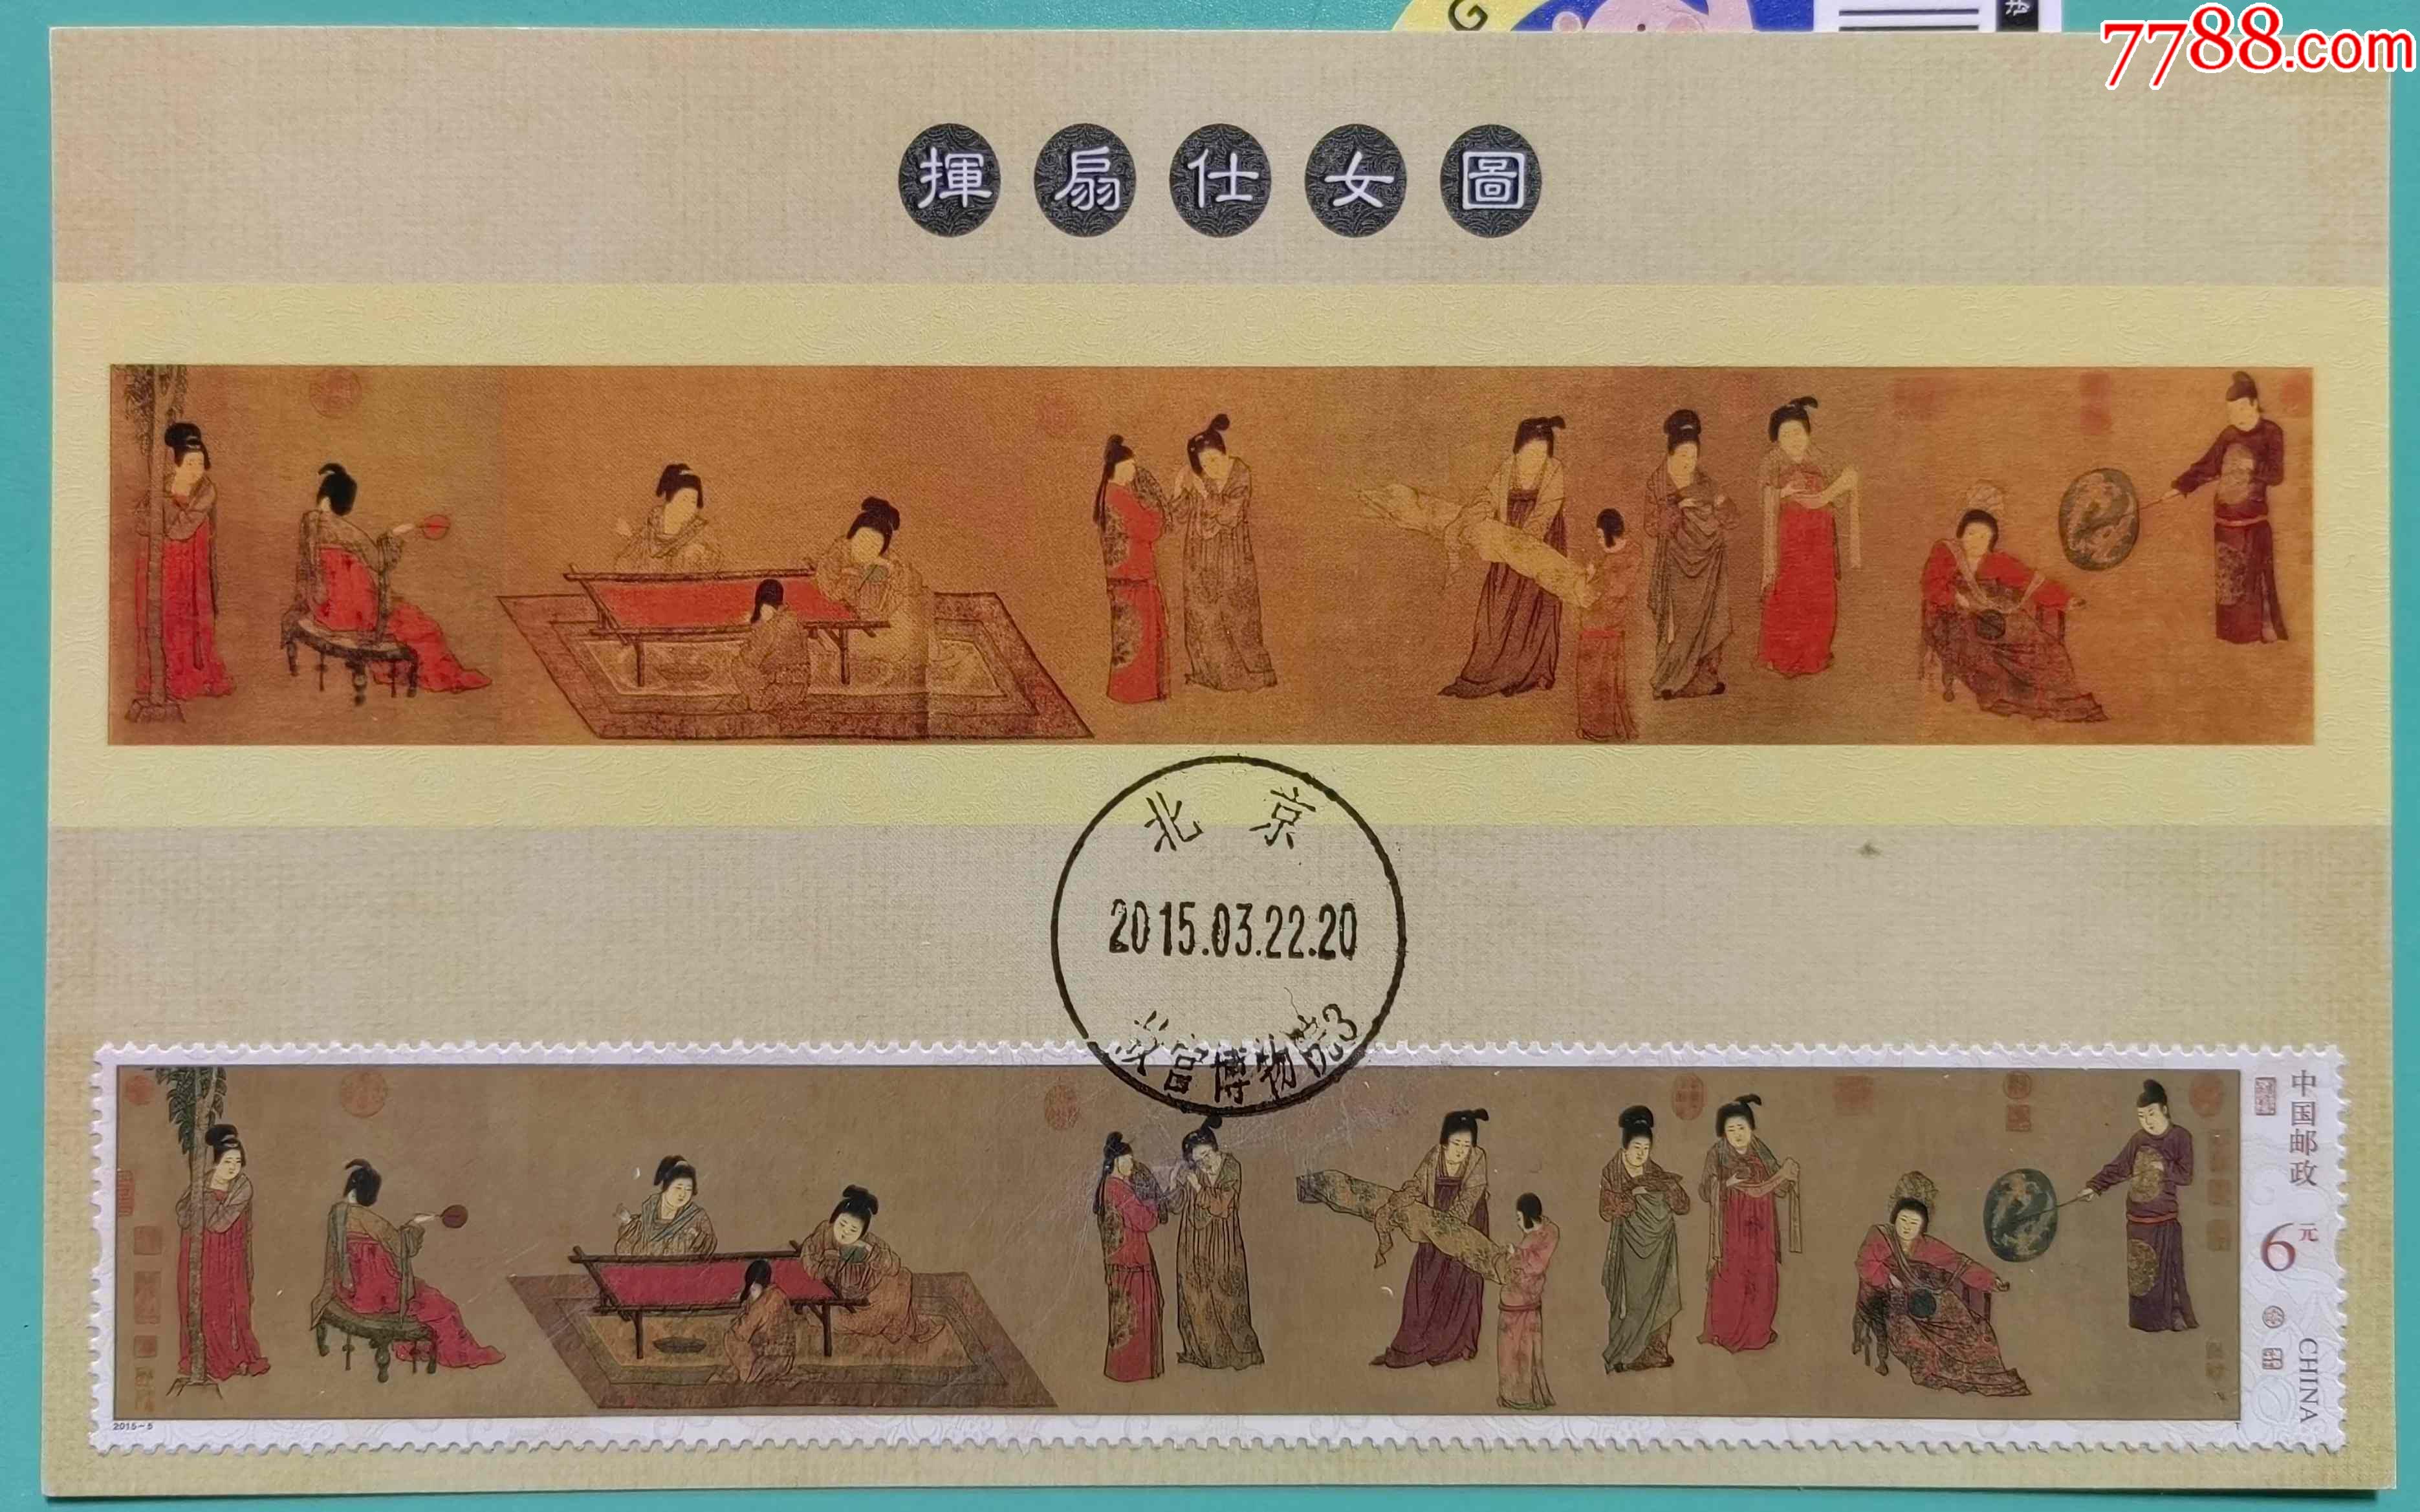 20155挥扇仕女图邮票小型张盖故宫博物院首日戳原地极限片